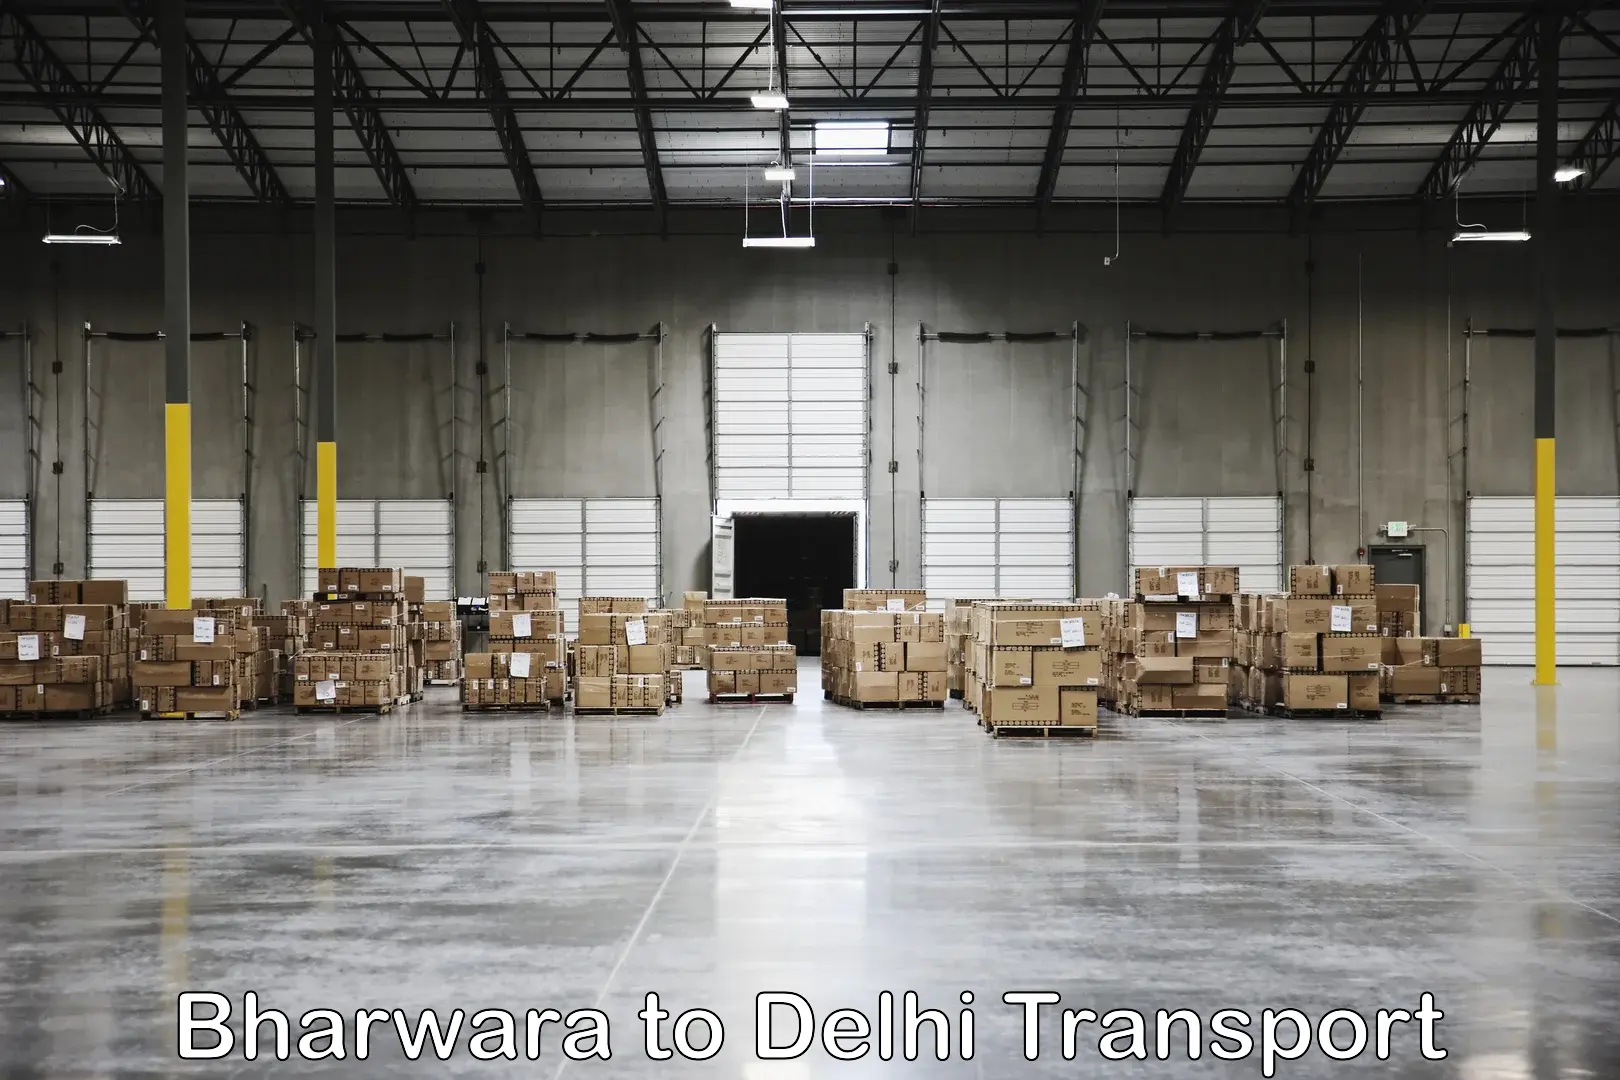 Container transport service Bharwara to IIT Delhi